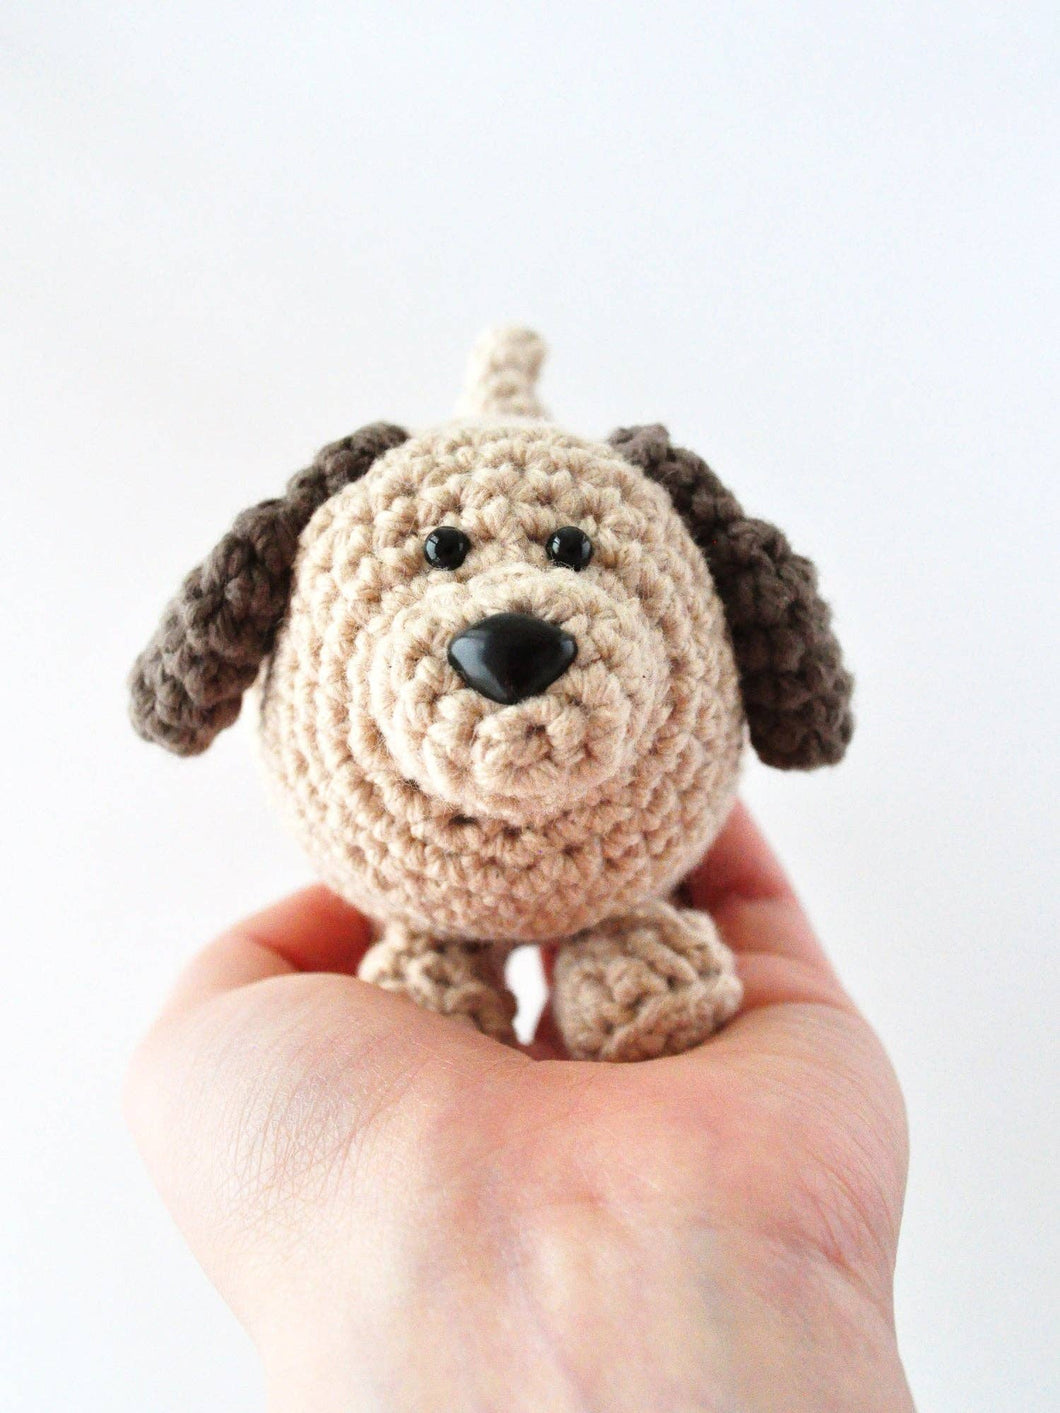 Dog Crochet Kit